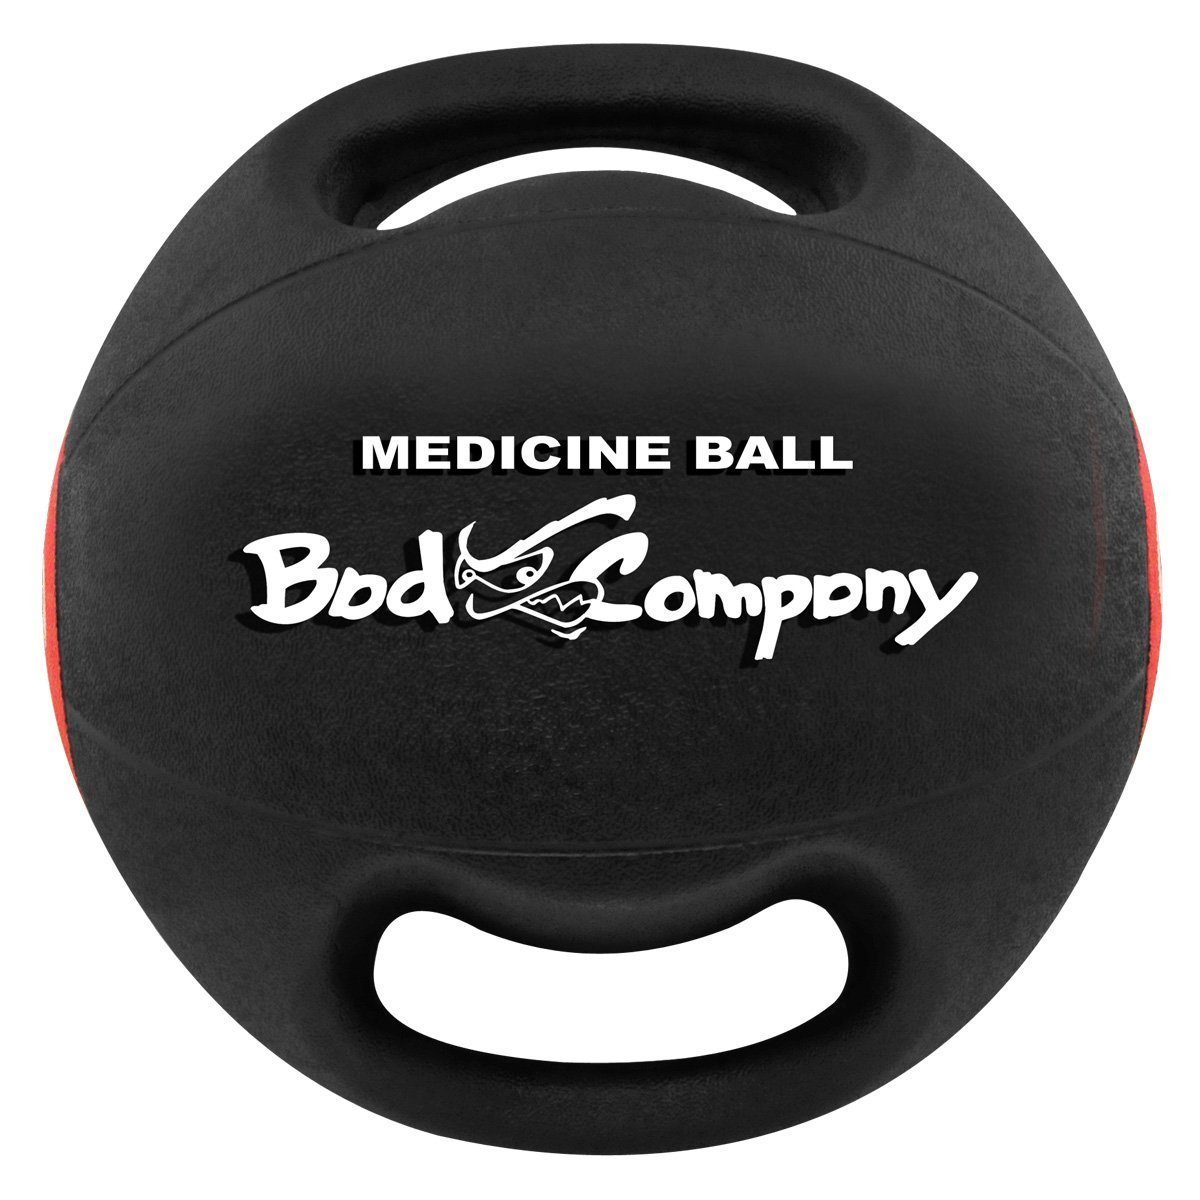 Company Bad Medizinball